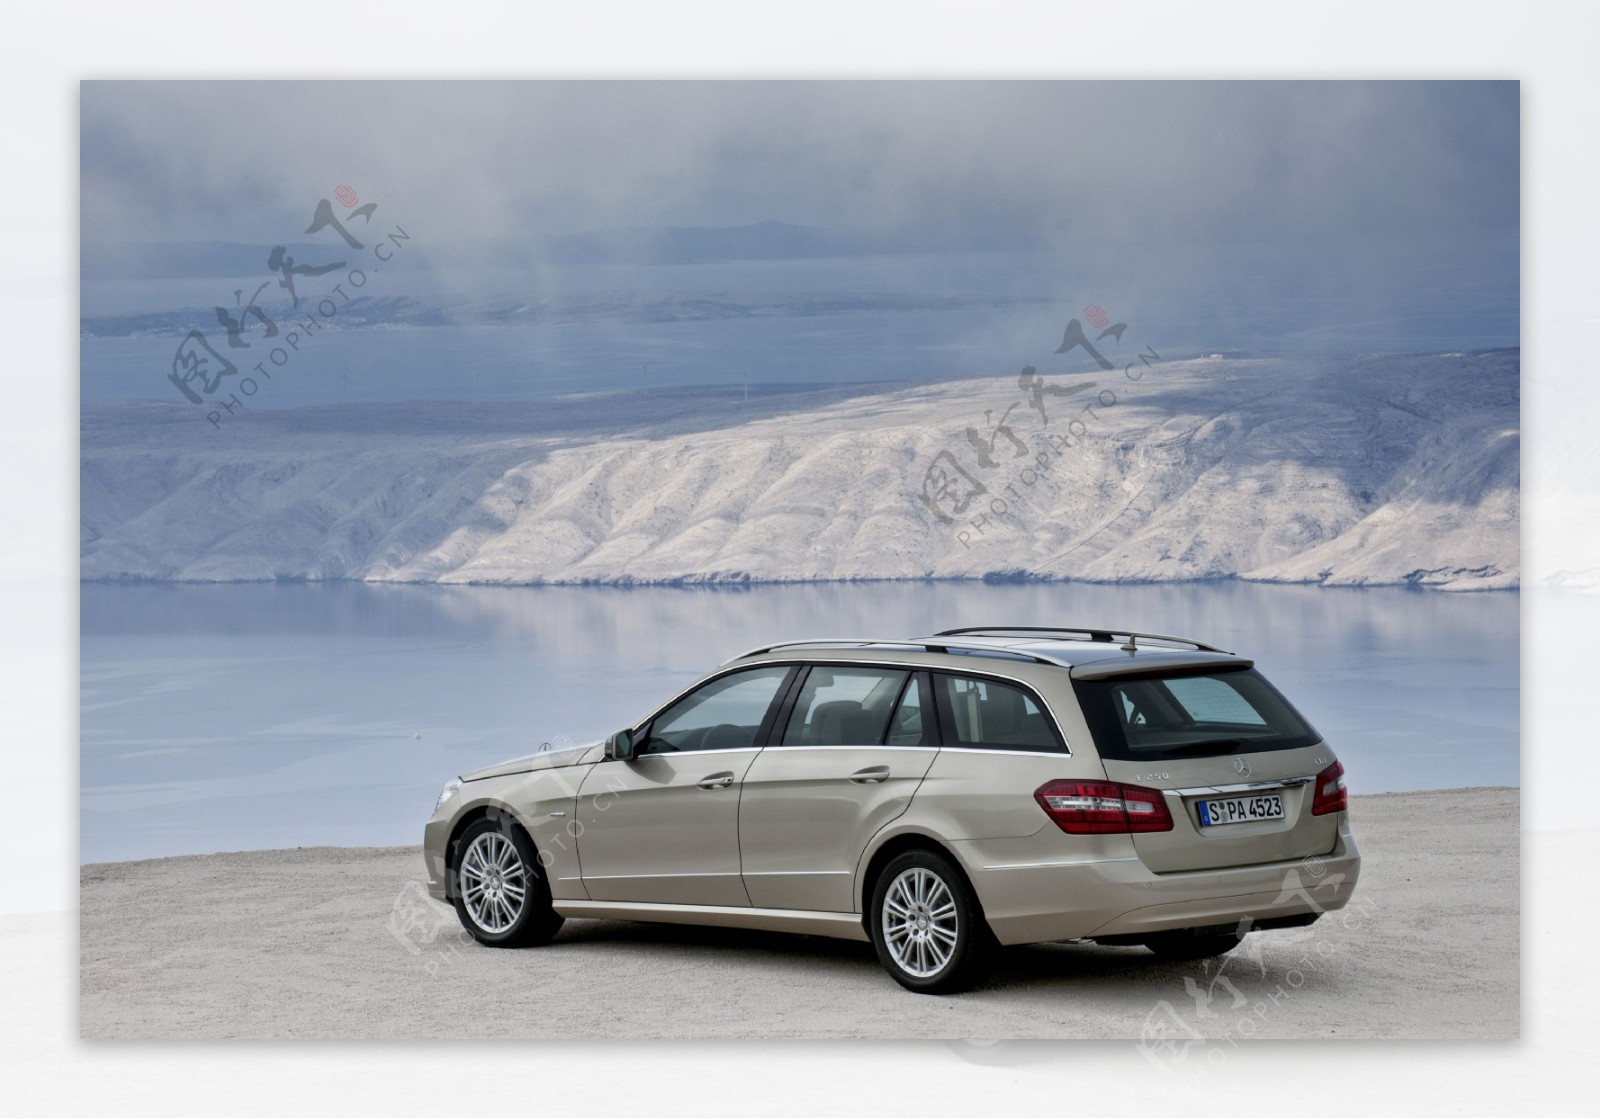 雪景与汽车图片